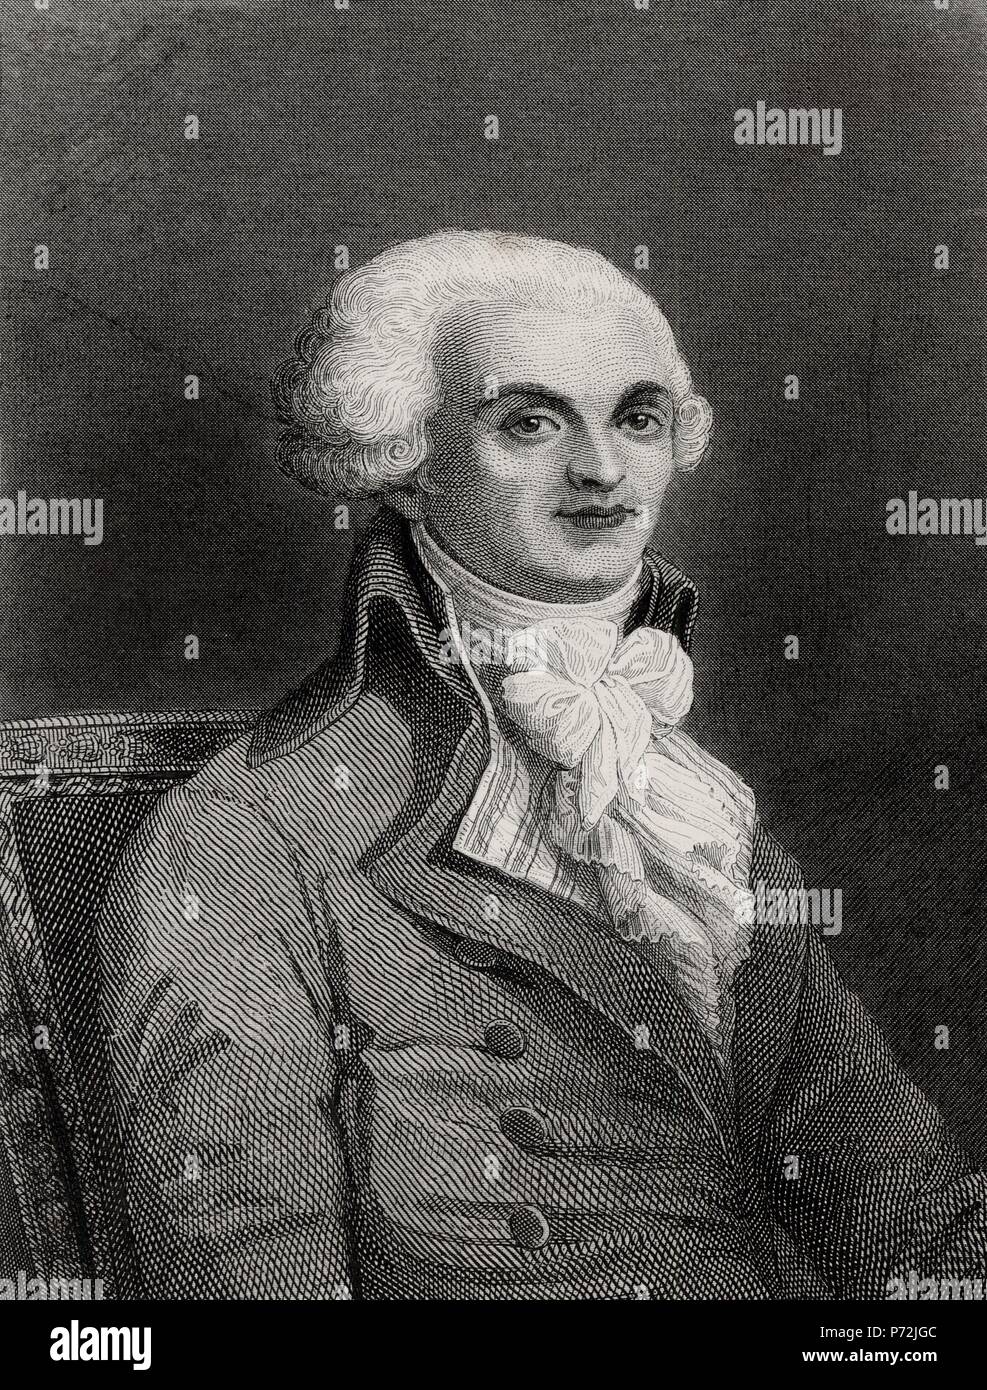 Maximilien François Marie Isidore Robespierre (1758-1794), abogado, escritor, orador y político francés. Grabado de 1866. Stock Photo